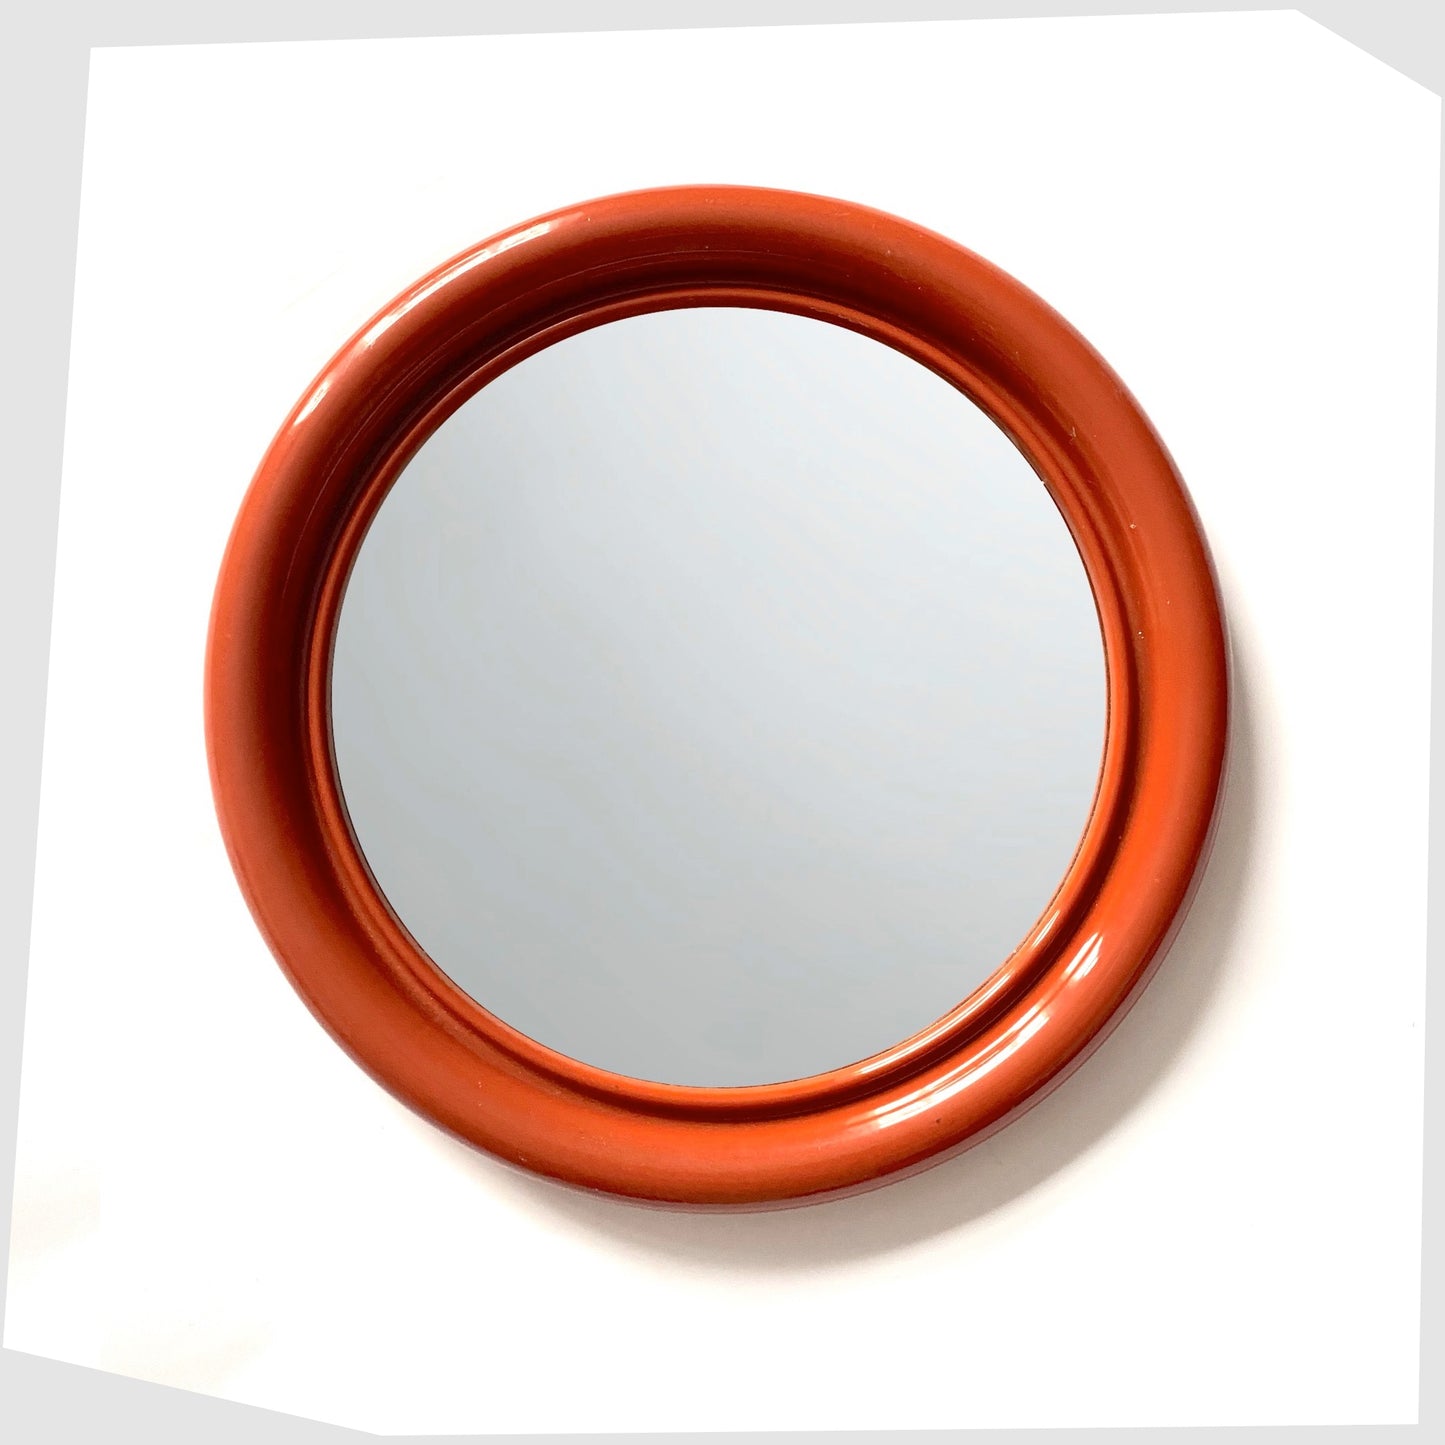 vintage-crayonne-mirror-in-red-plastic-circular-mirror